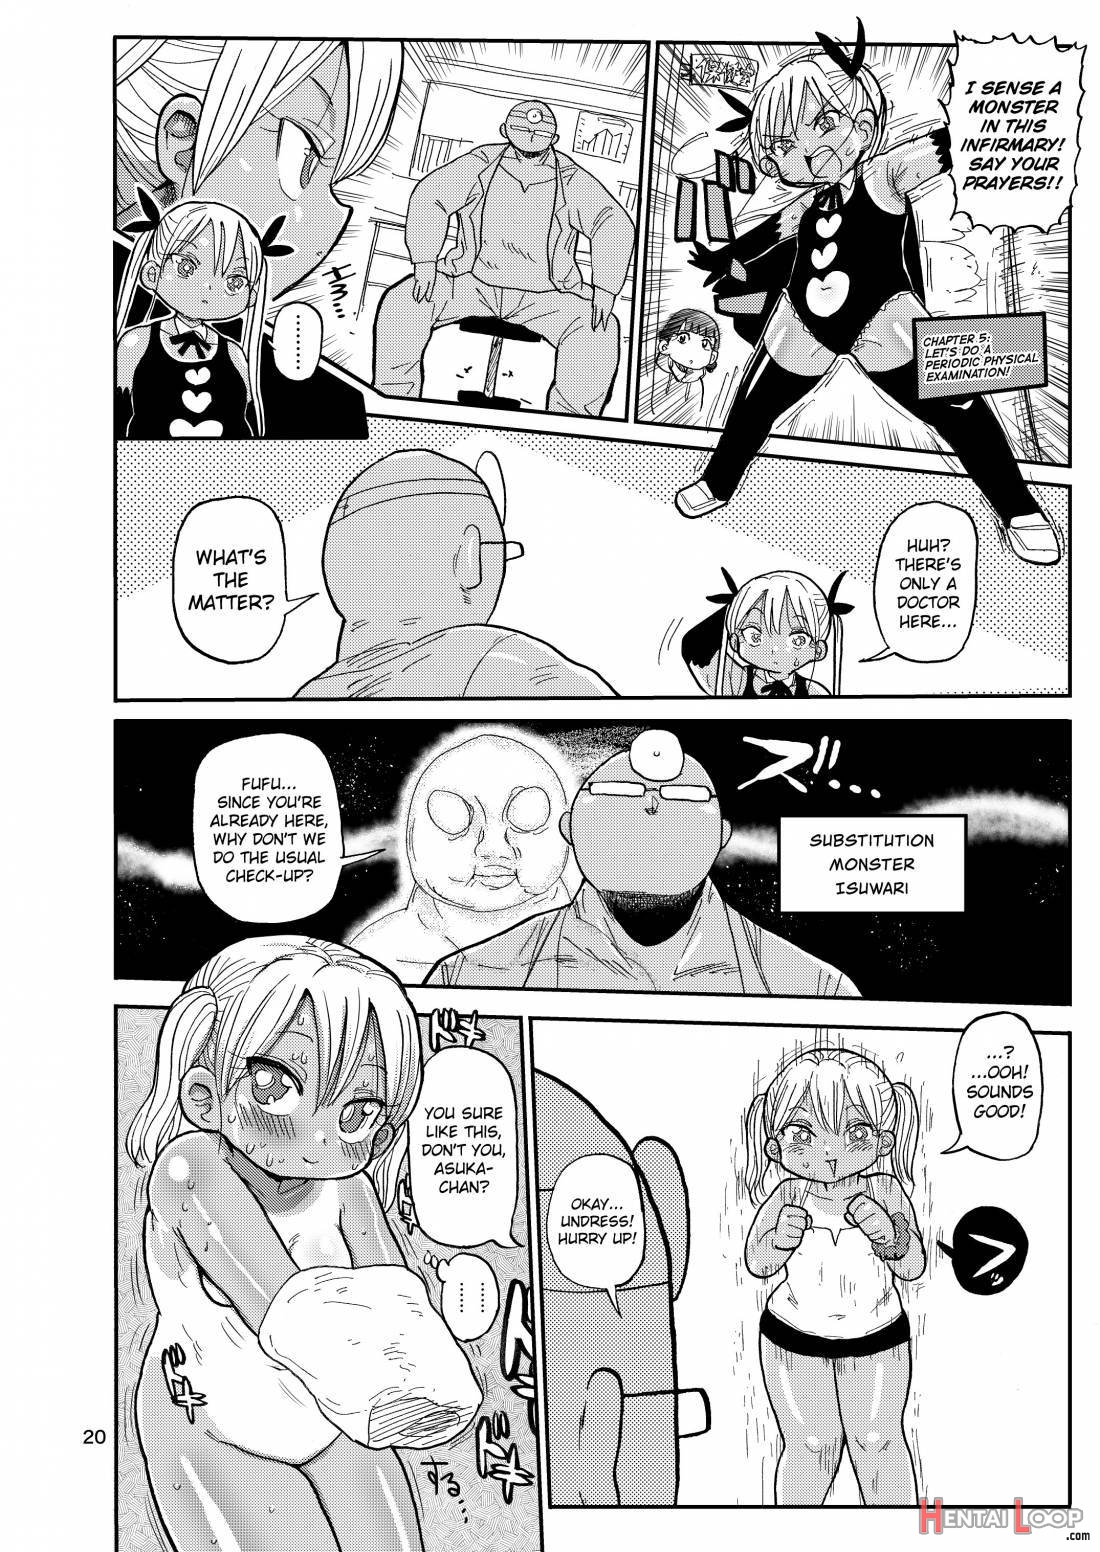 Yousei no Mahou Shoujo 2 page 19